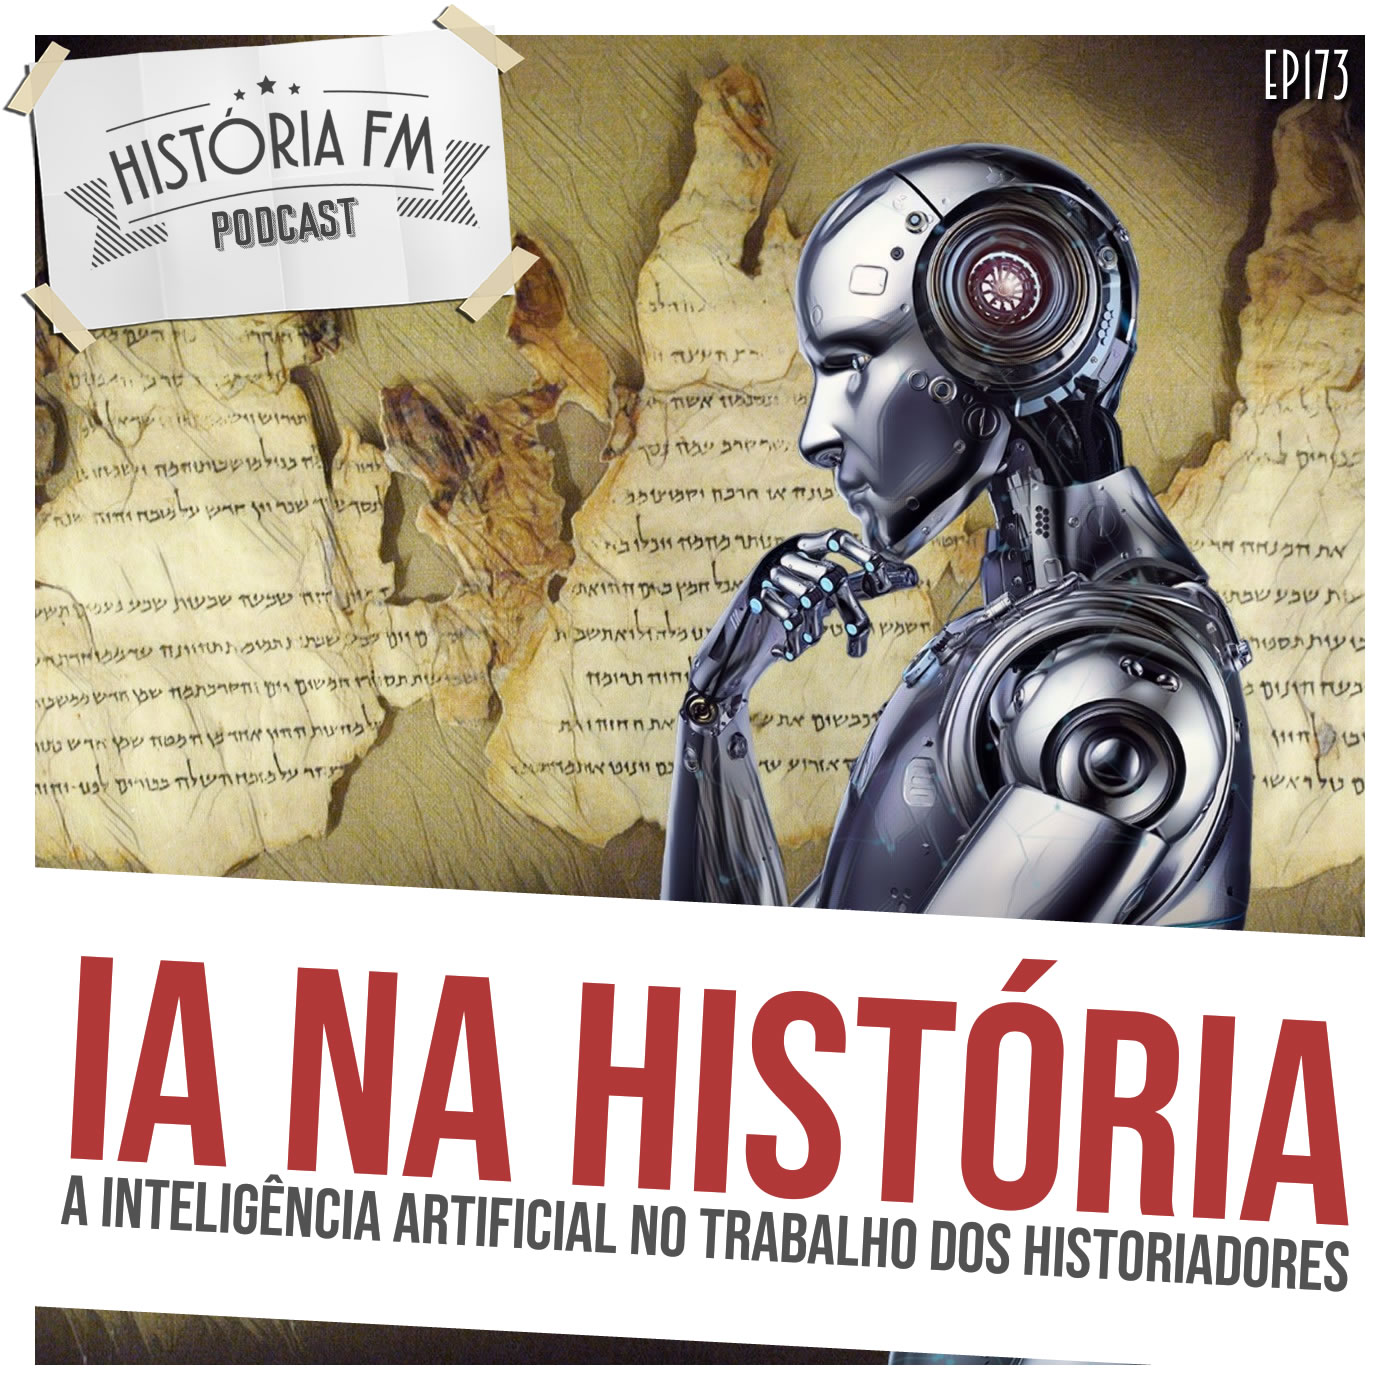 IA na História: a inteligência artificial no trabalho dos historiadores